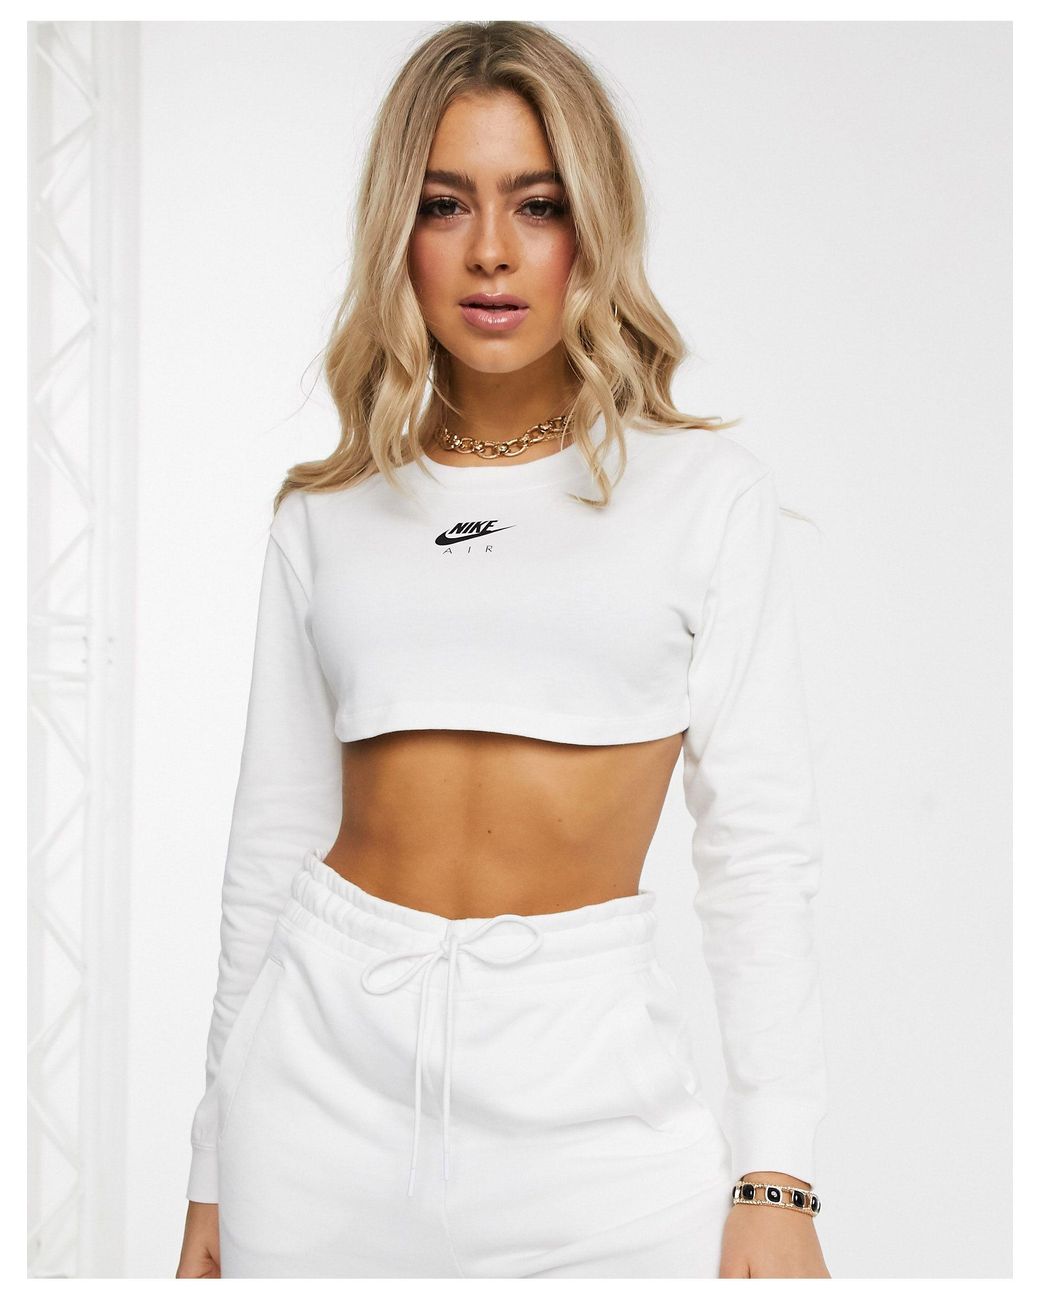 Nike Cotton Air Long Sleeve White Super Crop Top | Lyst Australia